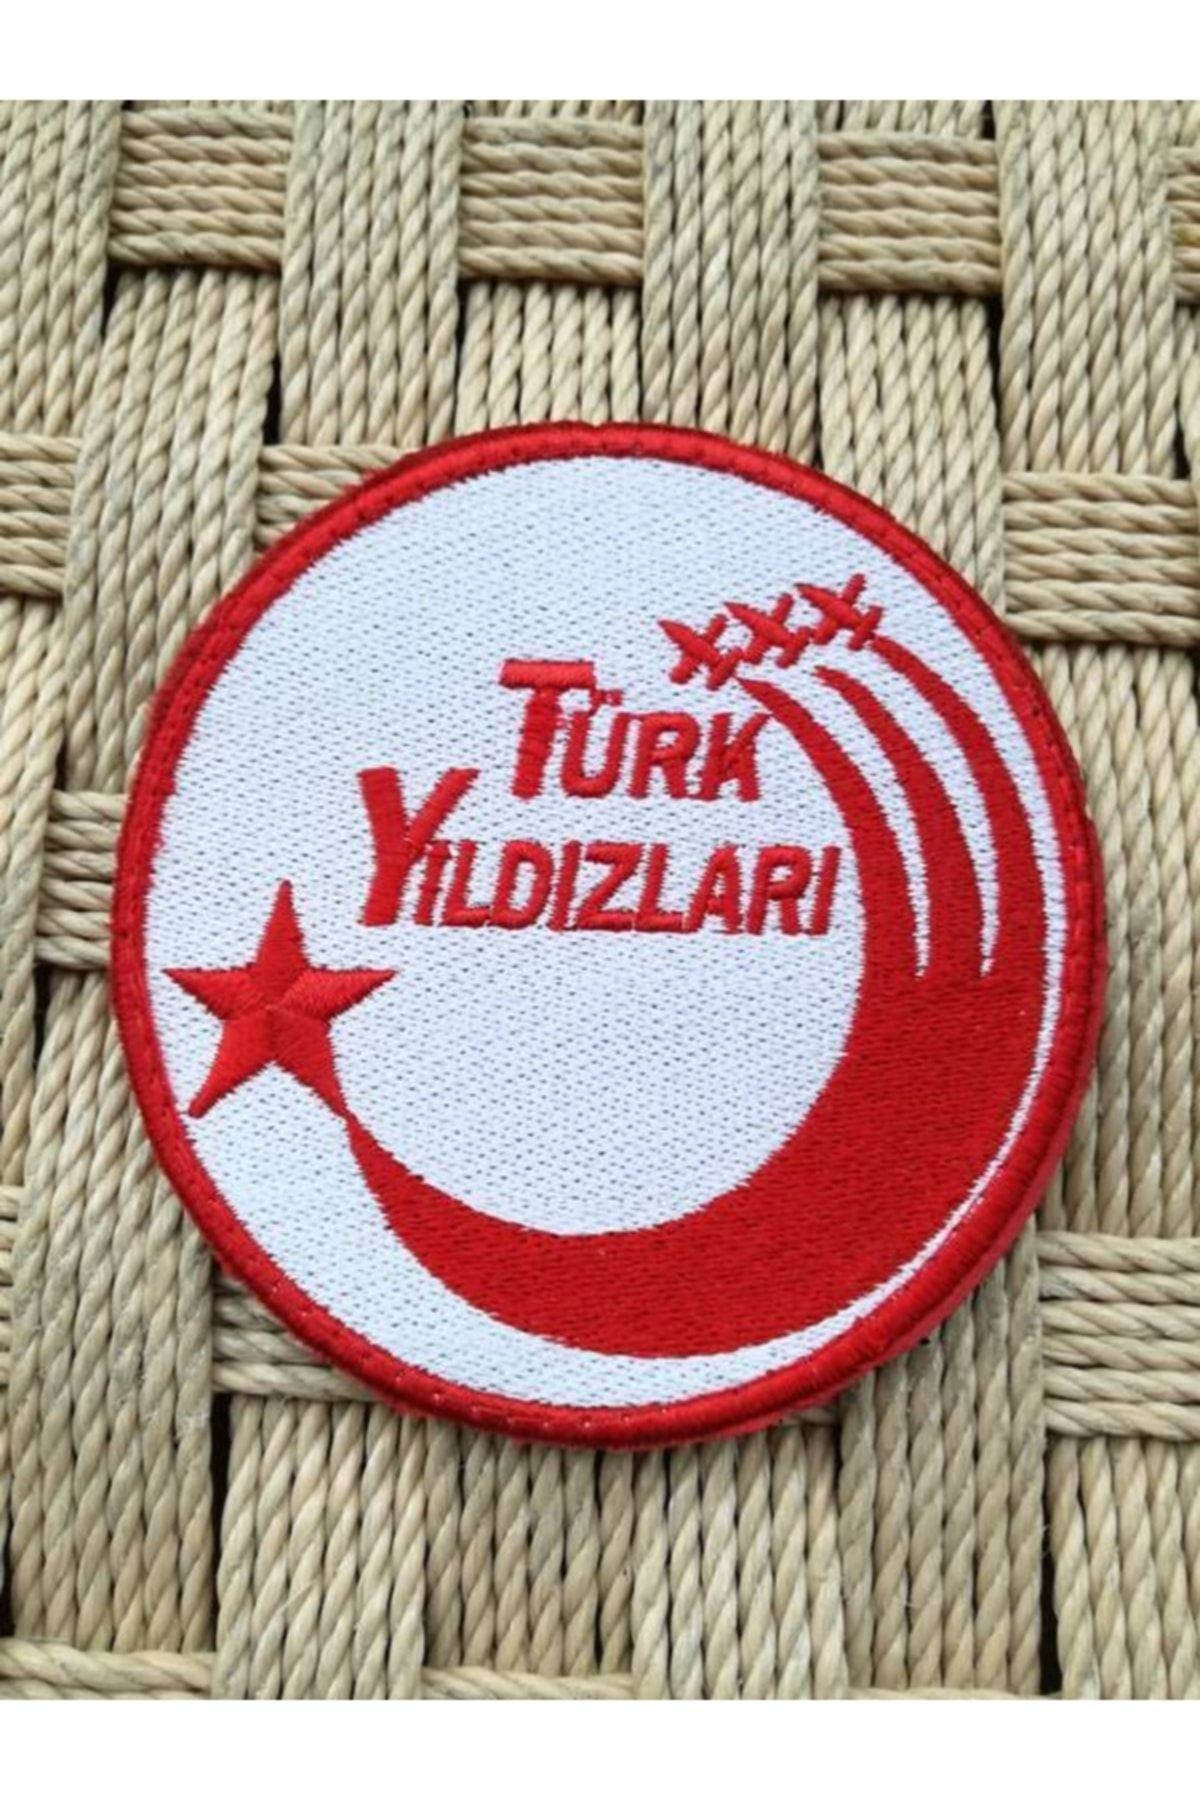 BURAK ASKERİ MALZEME Beyaz Zemin Kırmızı Nakış Işlemeli Türk Yıldızları Patch Peç Arma